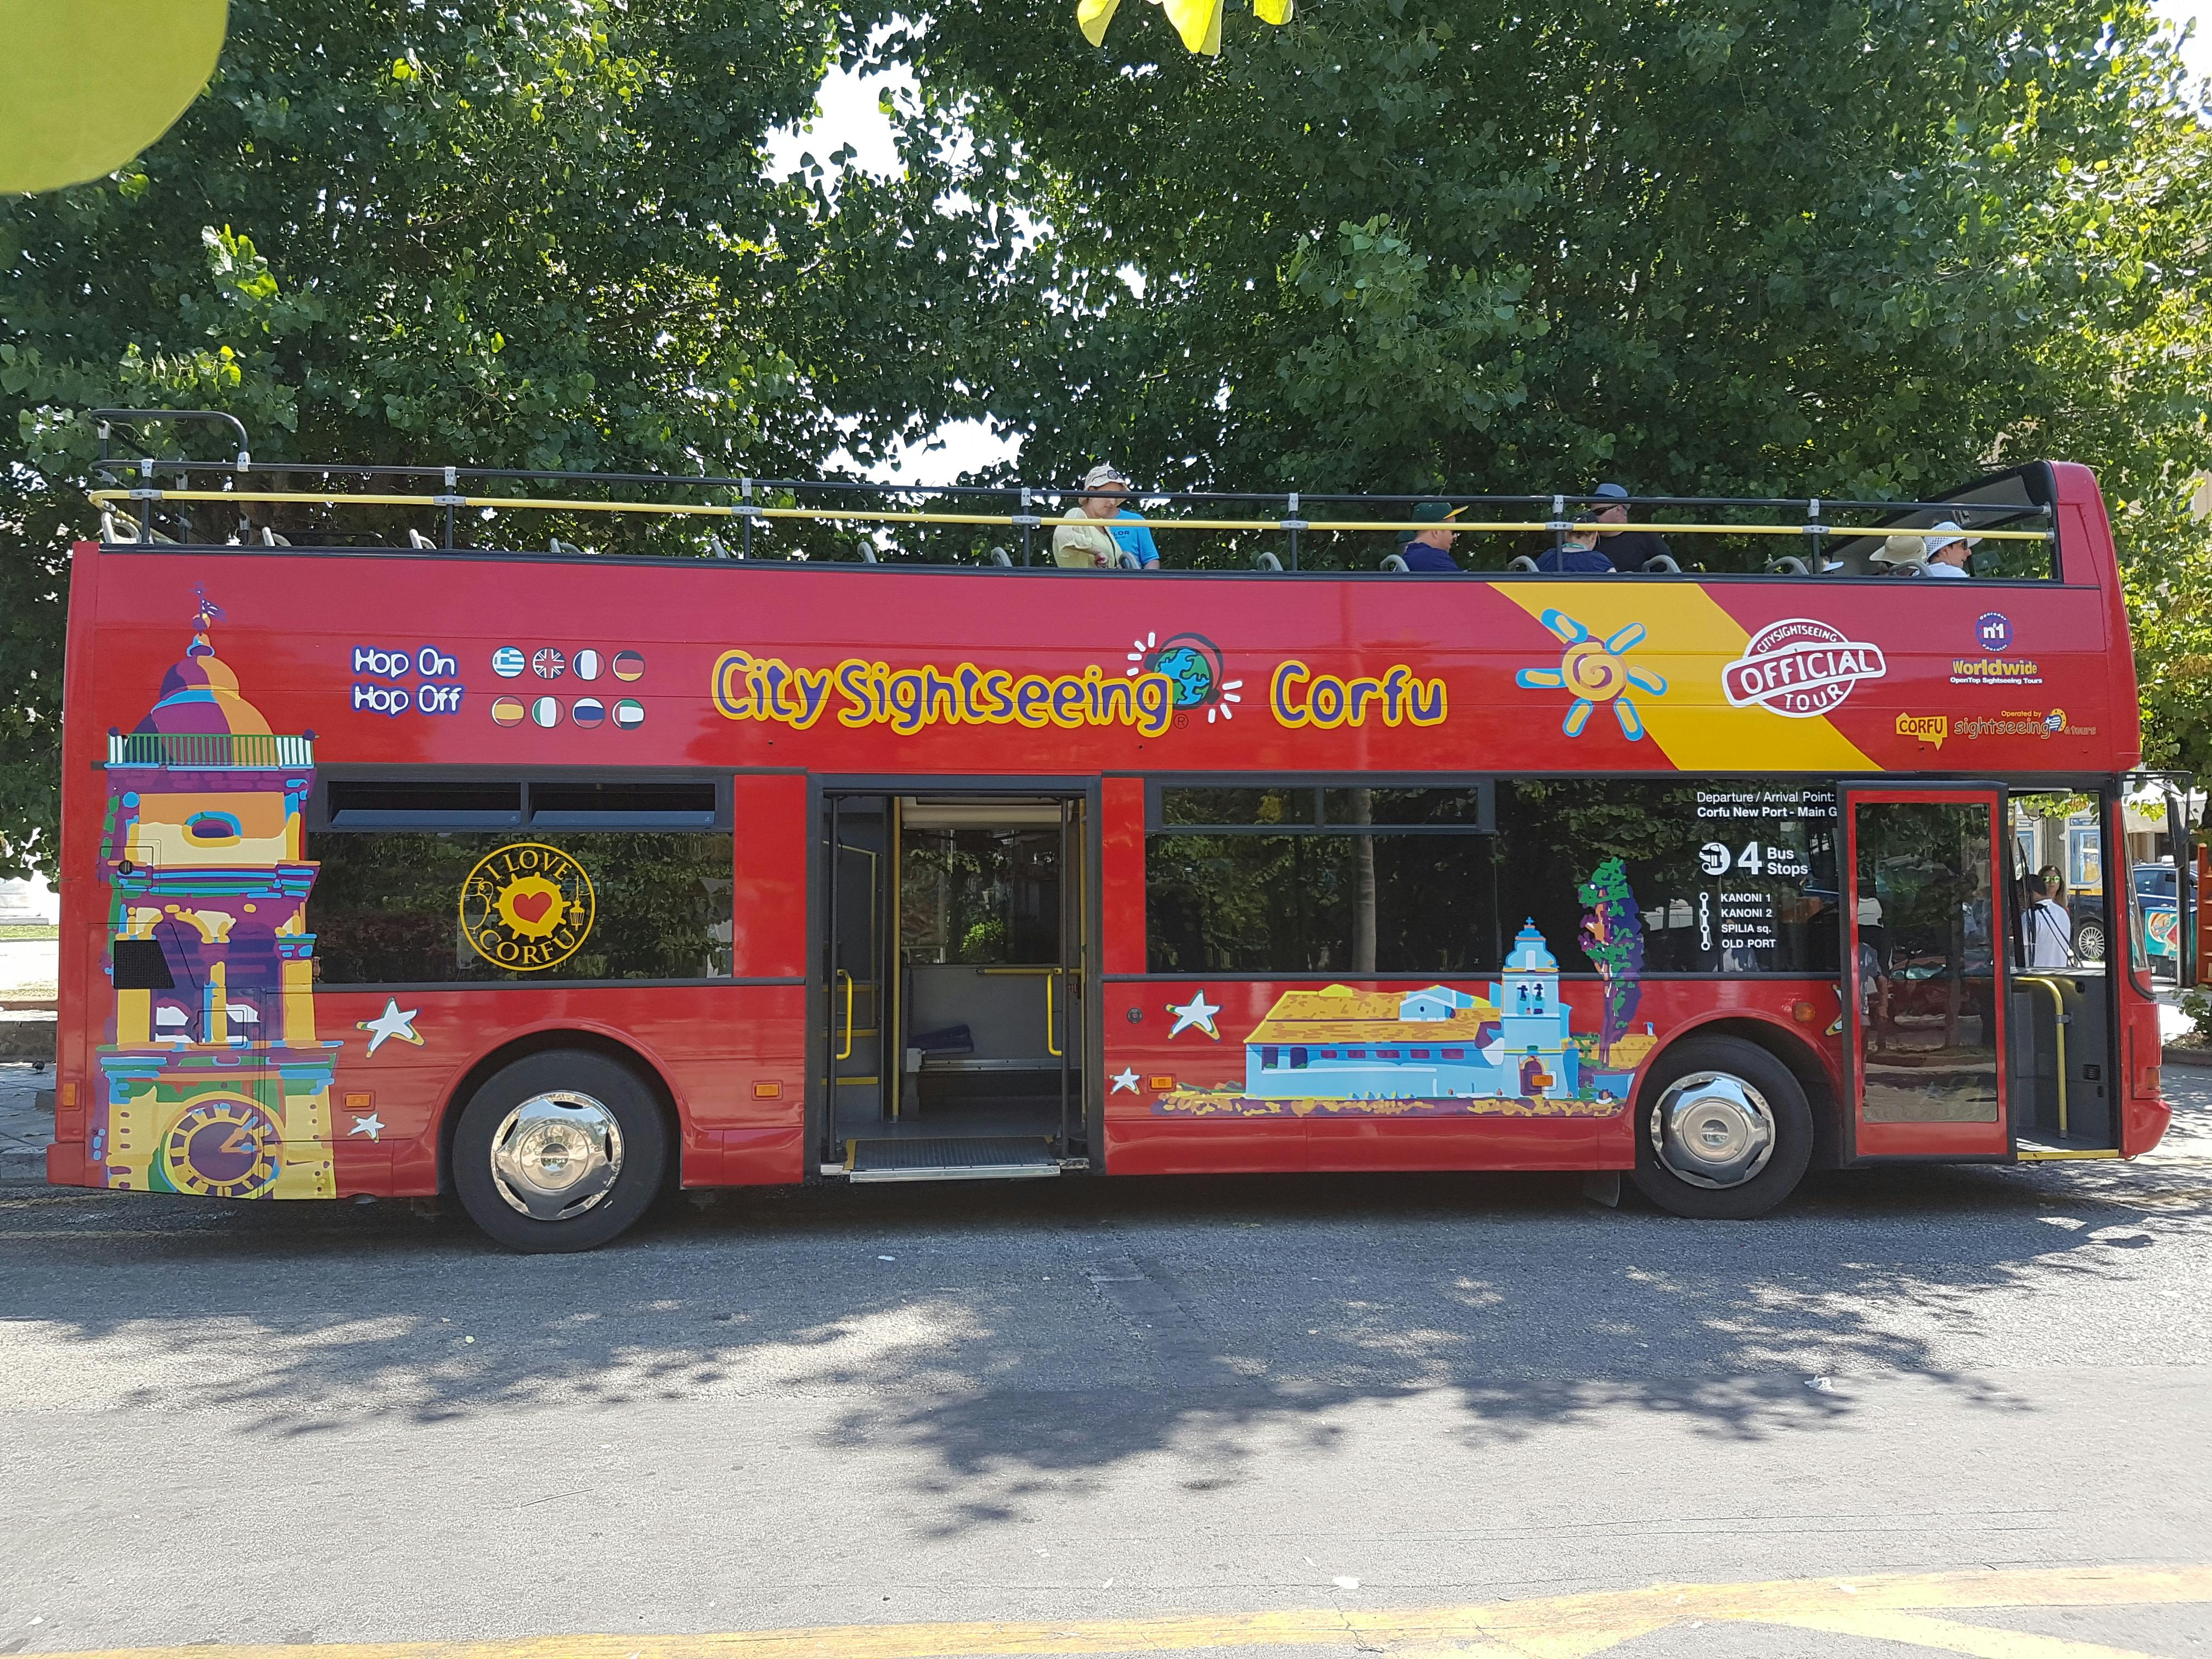 Stadtrundfahrt mit dem Hop-on-Hop-off-Bus durch Korfu